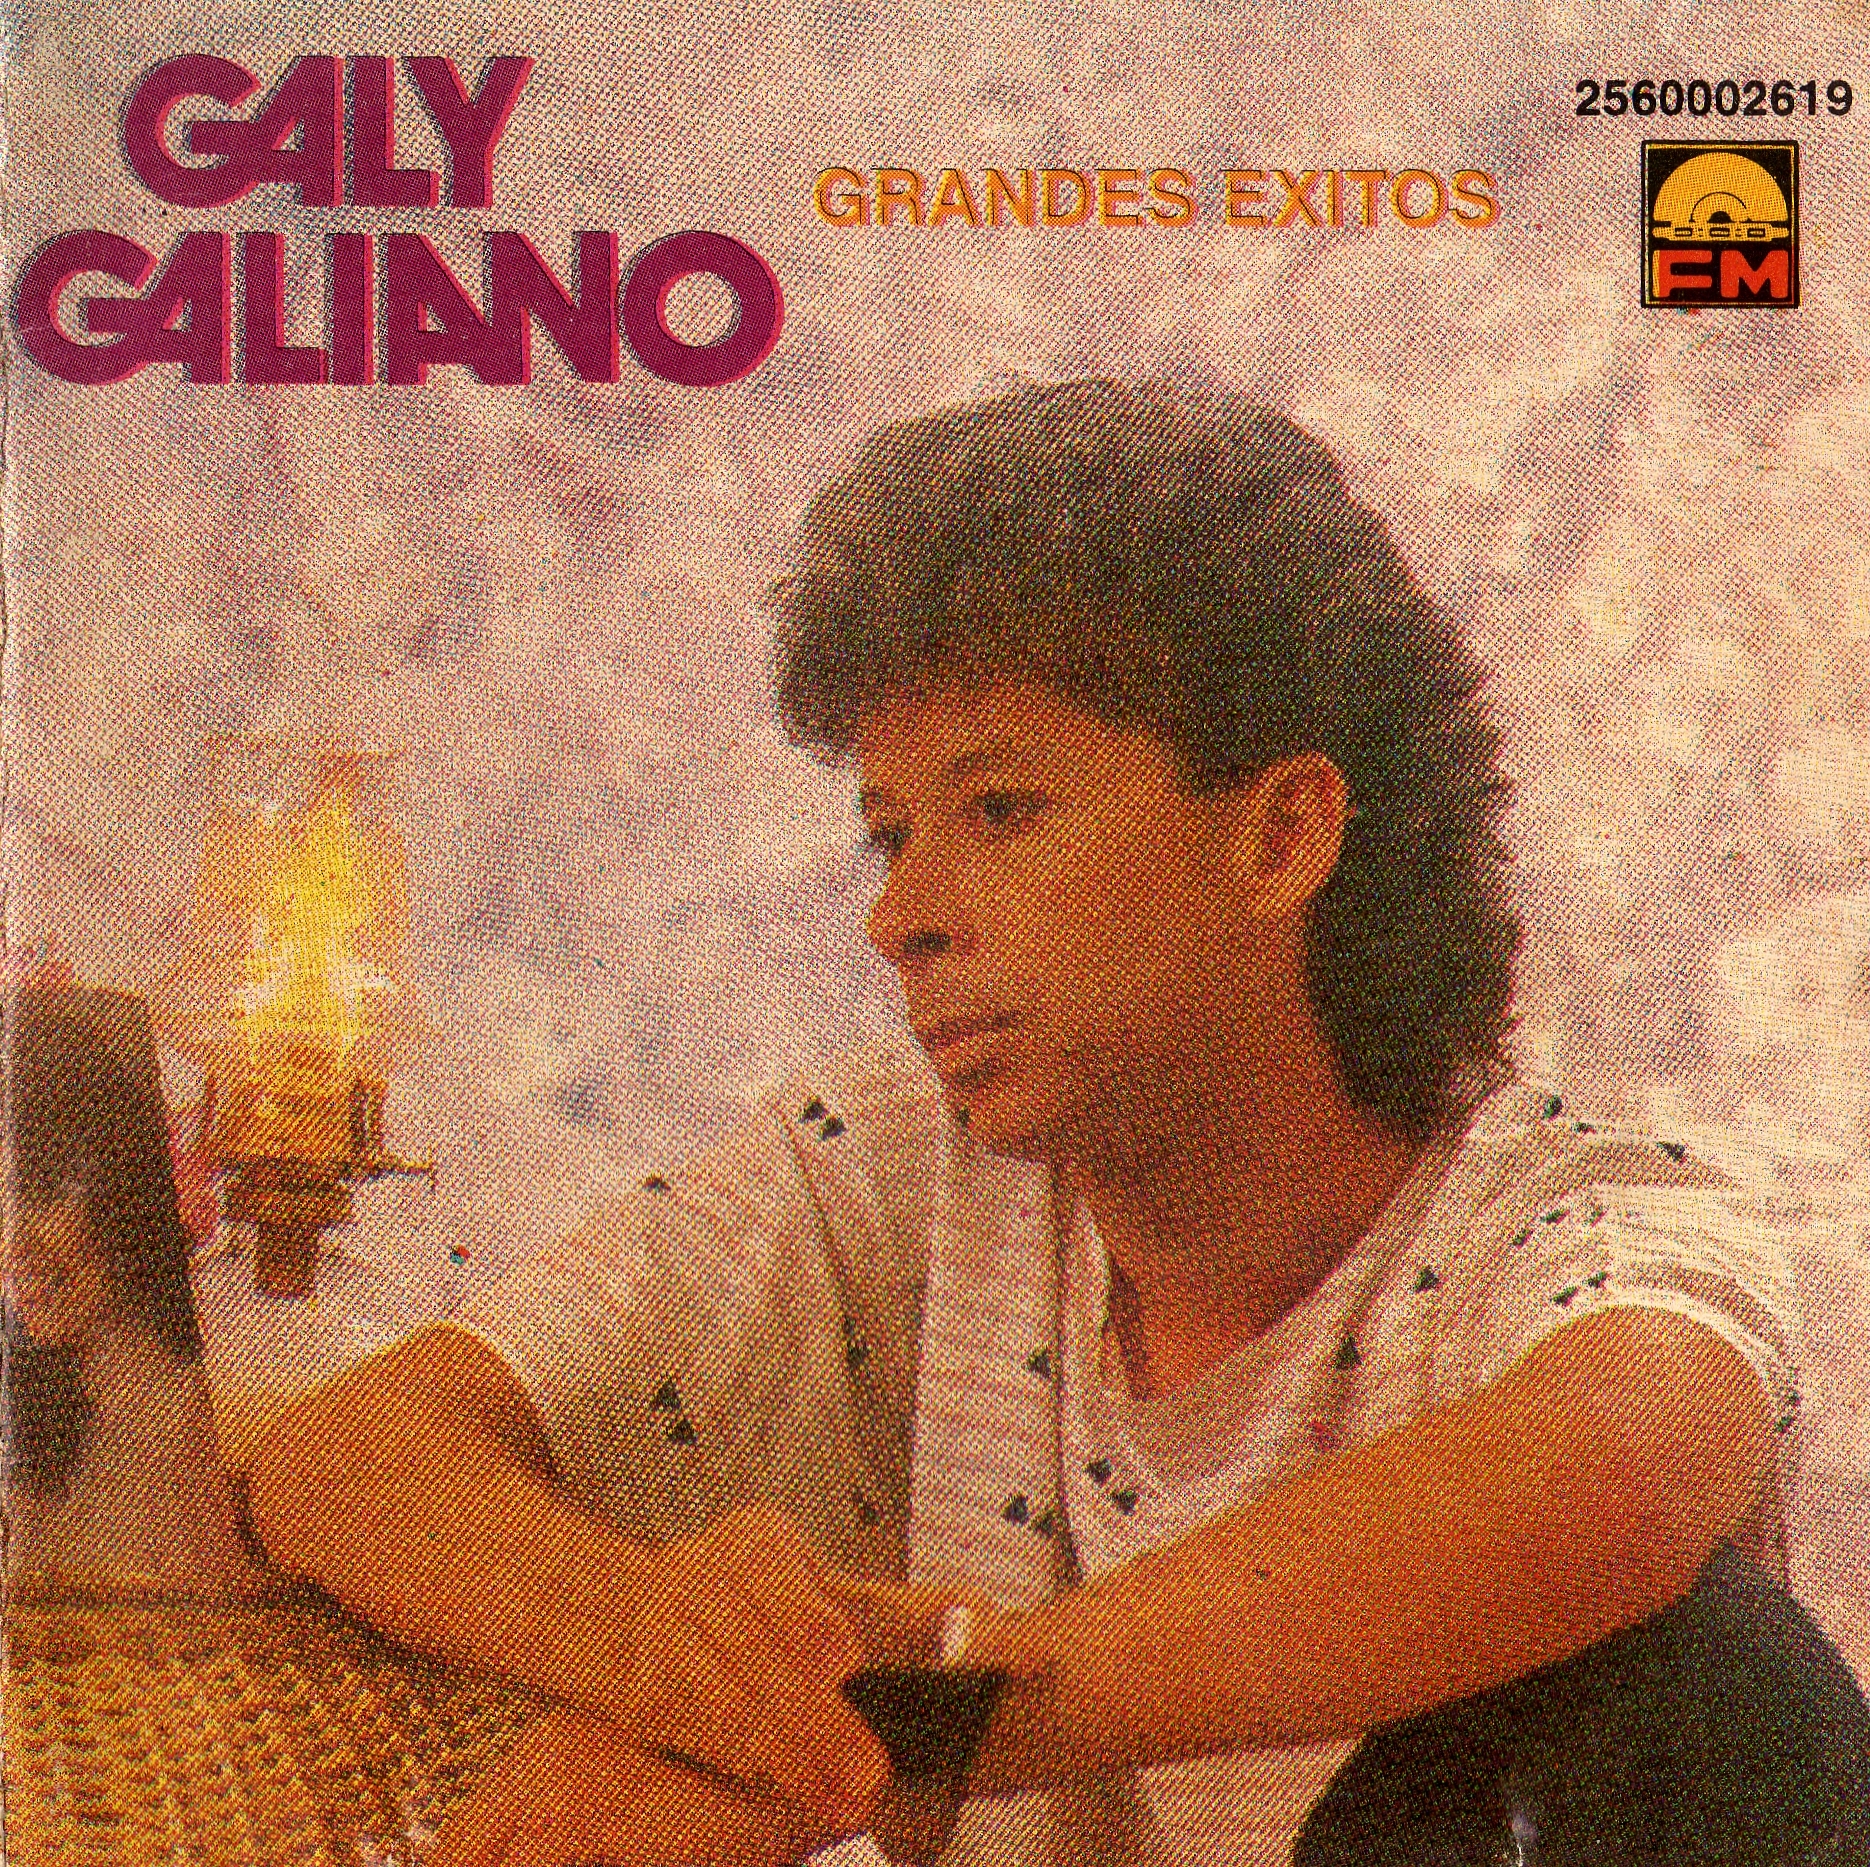 Gali galiano - grandes éxitos - fm discos y cintas ltda - 1994.